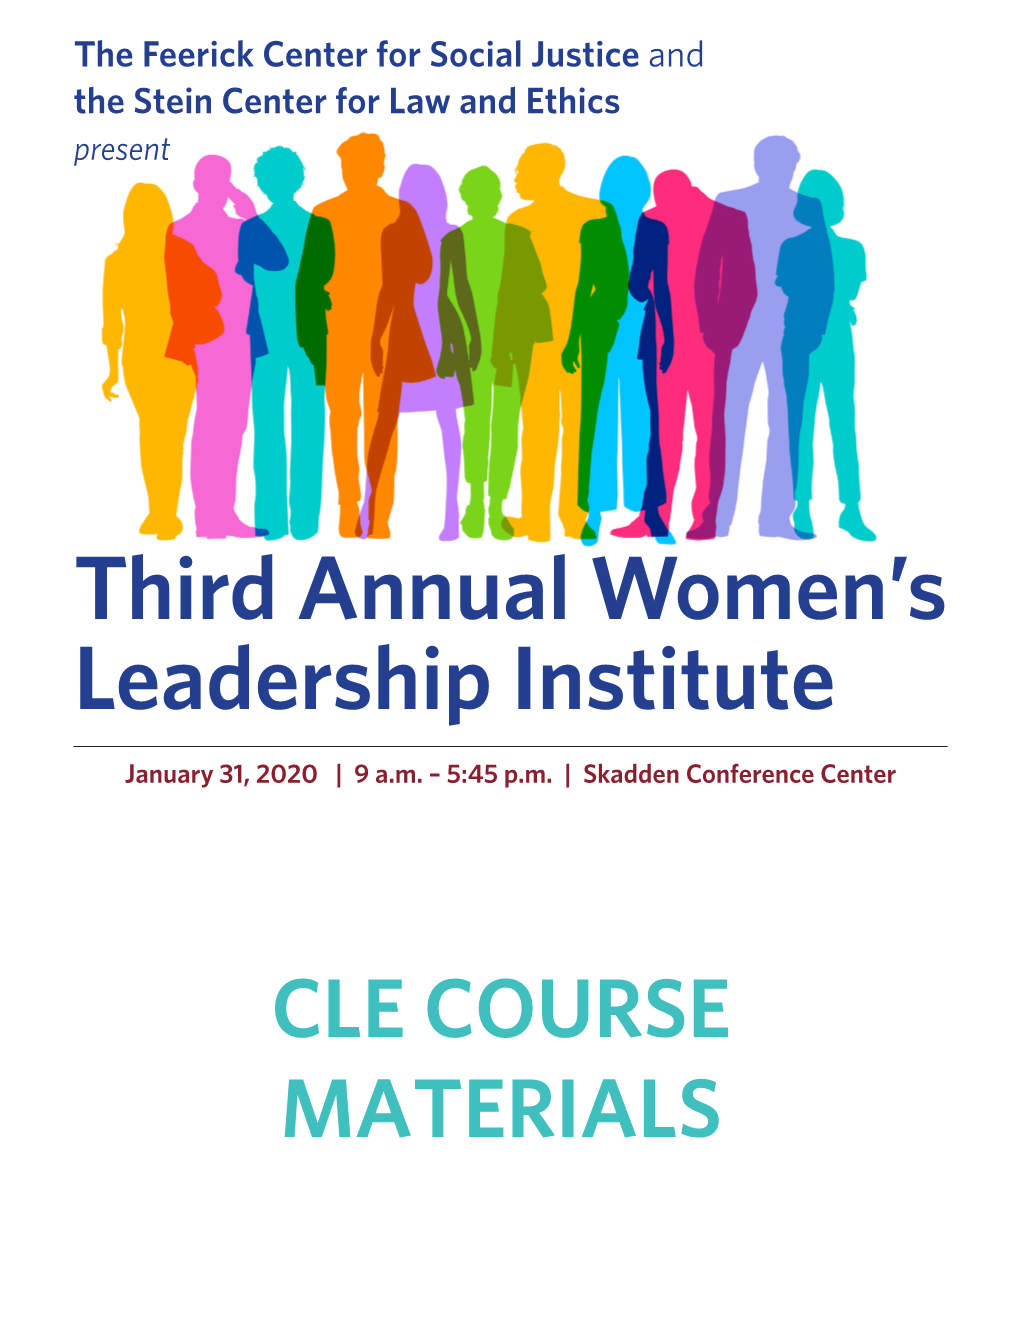 Third Annual Women's Leadership Institute